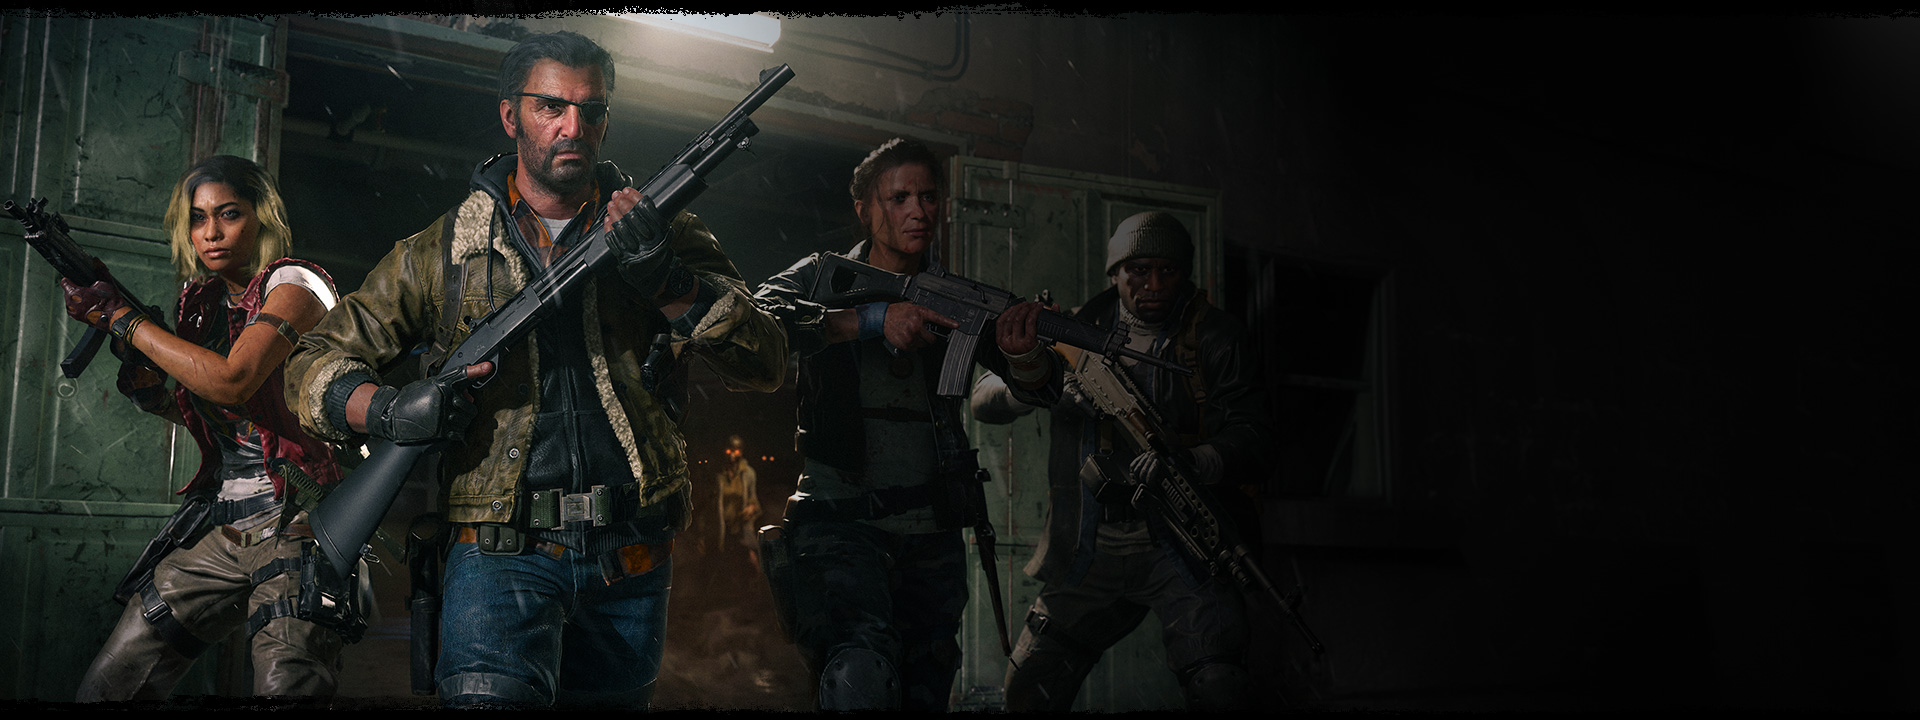 Quatre personnages sortent d’un entrepôt avec leurs armes levées alors qu’un zombie se tient derrière eux avec des yeux orange incandescents.